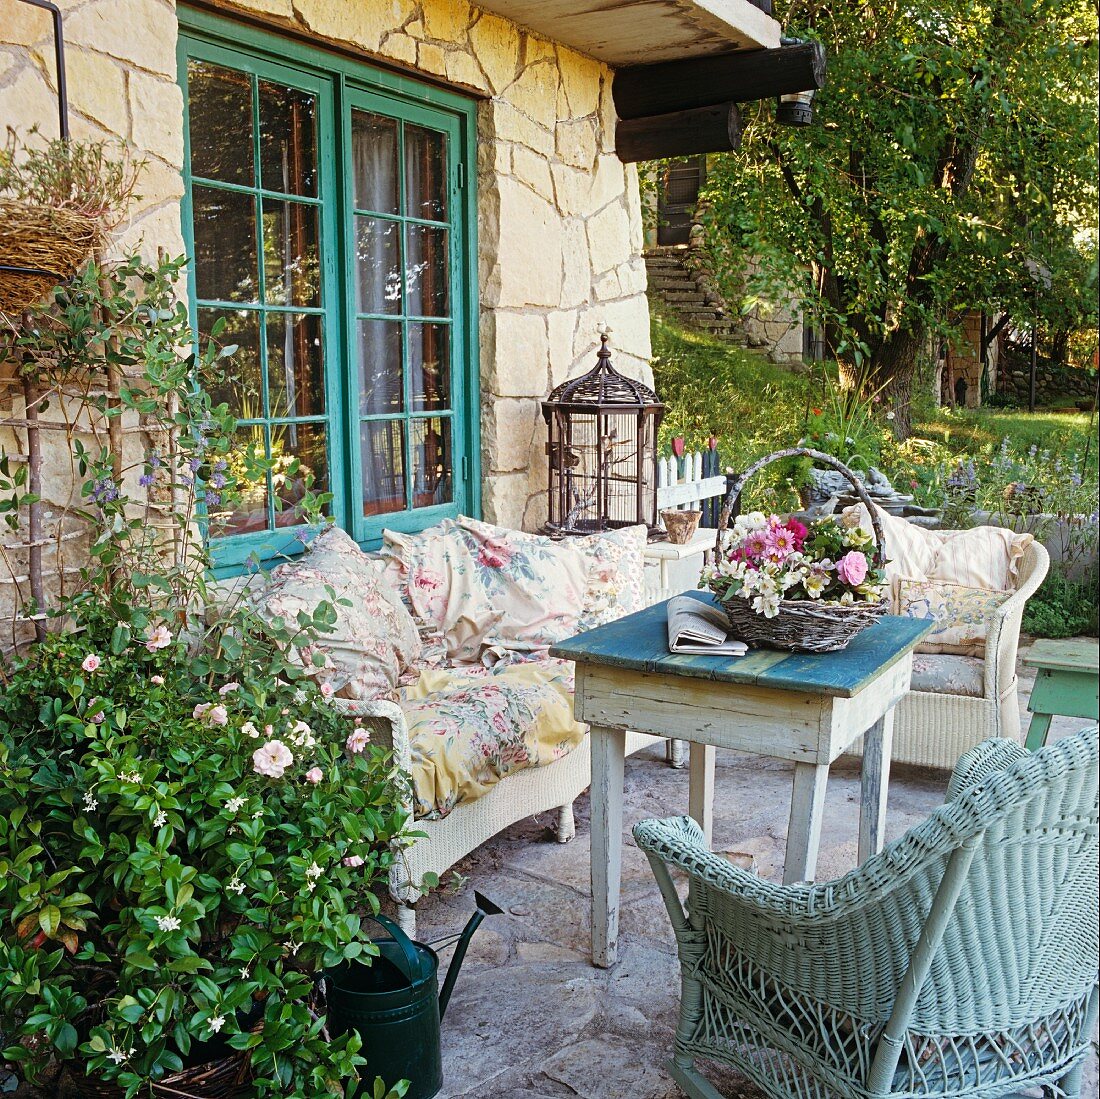 Gartenterrasse eines Natursteinhauses mit Vintage-Möbeln und einem dekorativen Blumengesteck in einem Korb